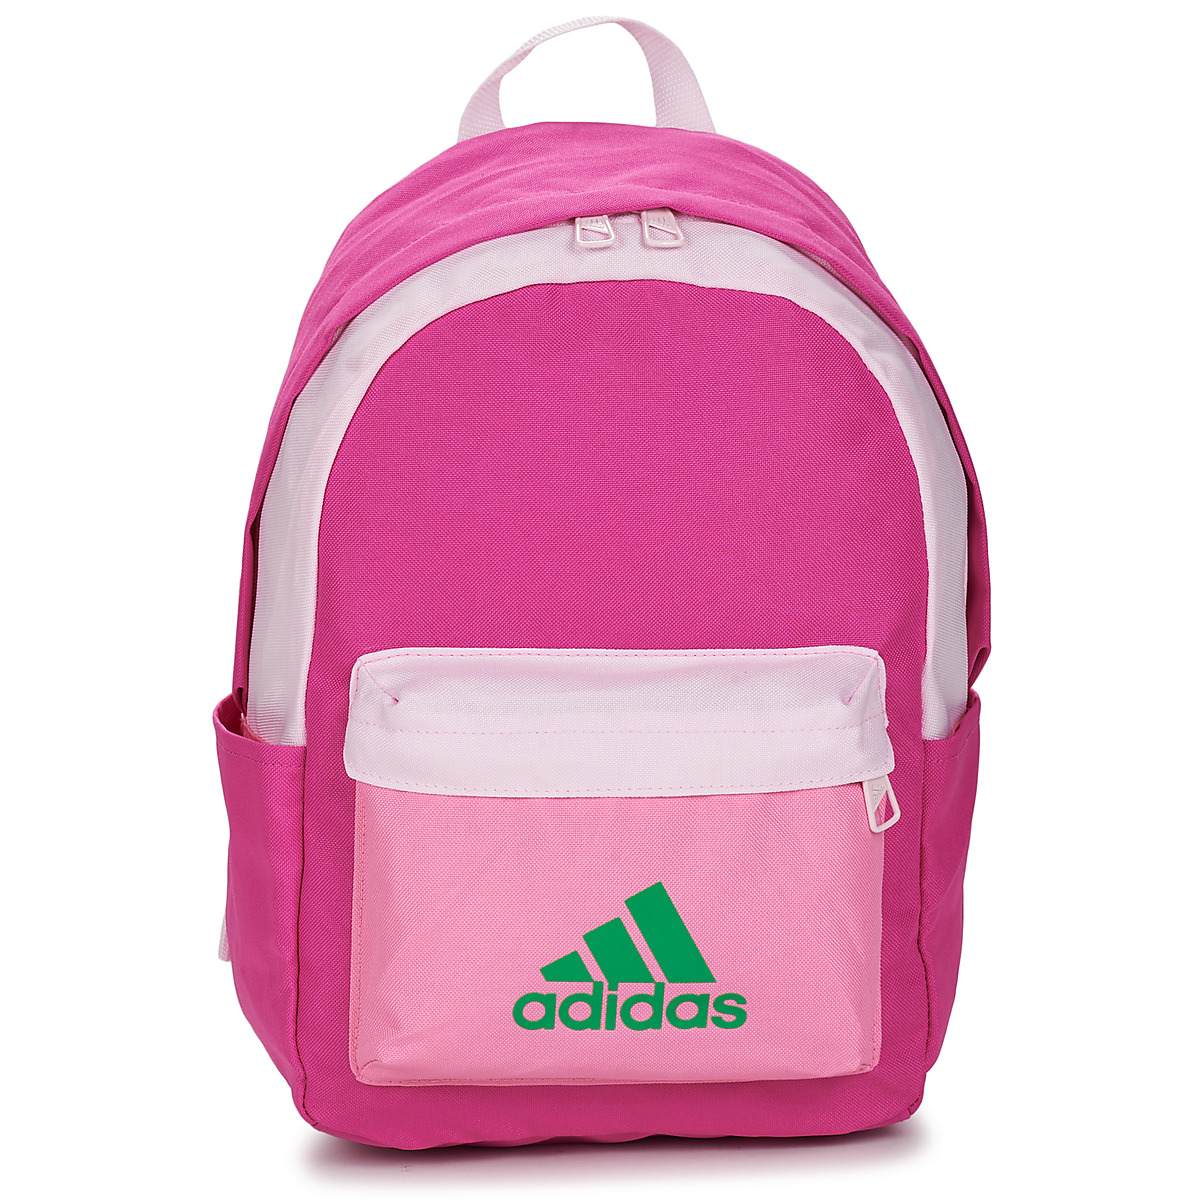 Adidas Backpack - Unisex Tassen